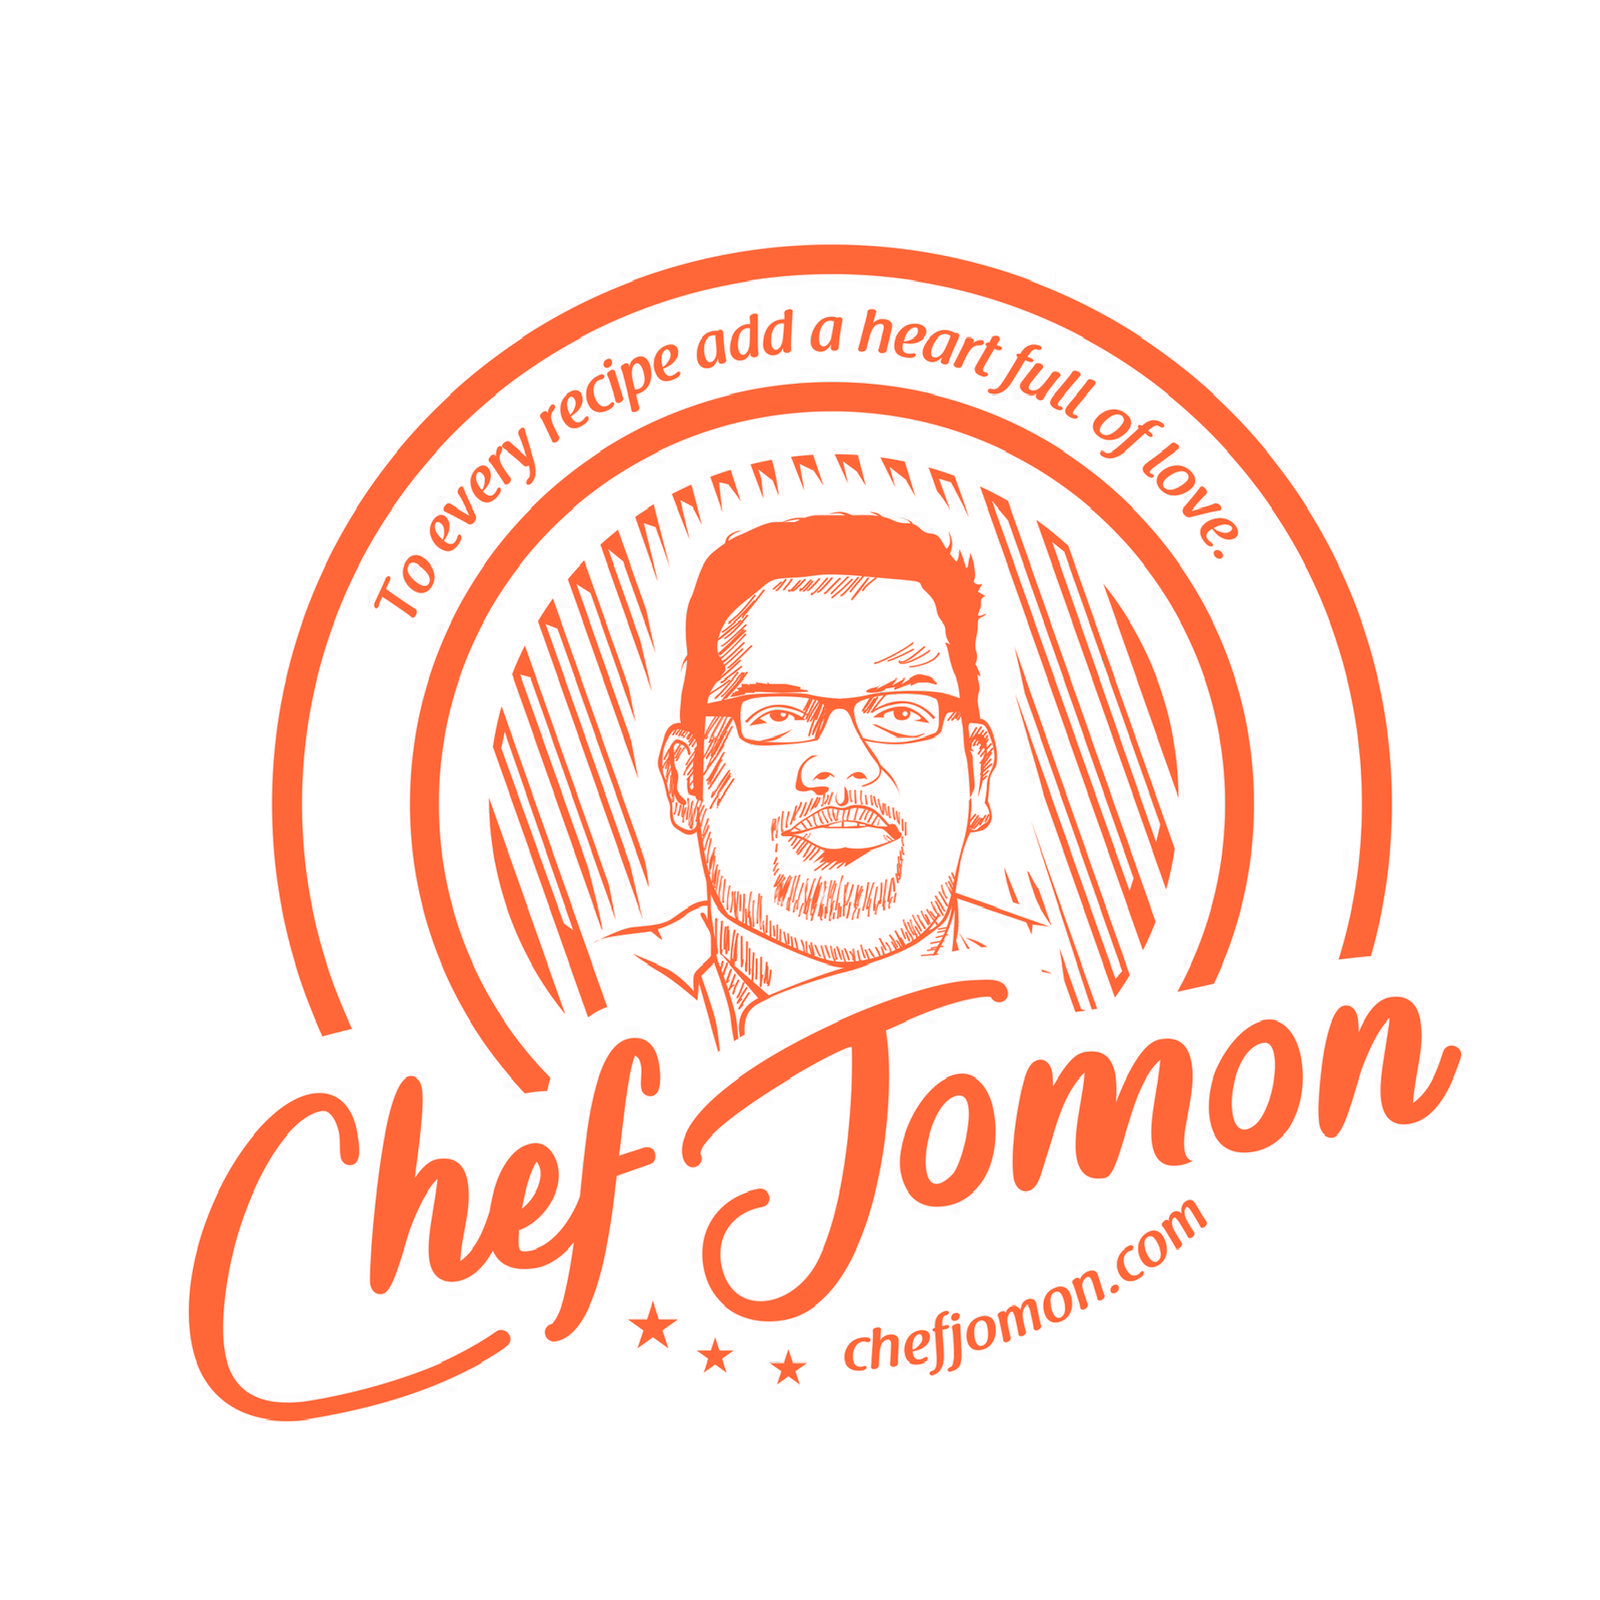 Chef Jomon